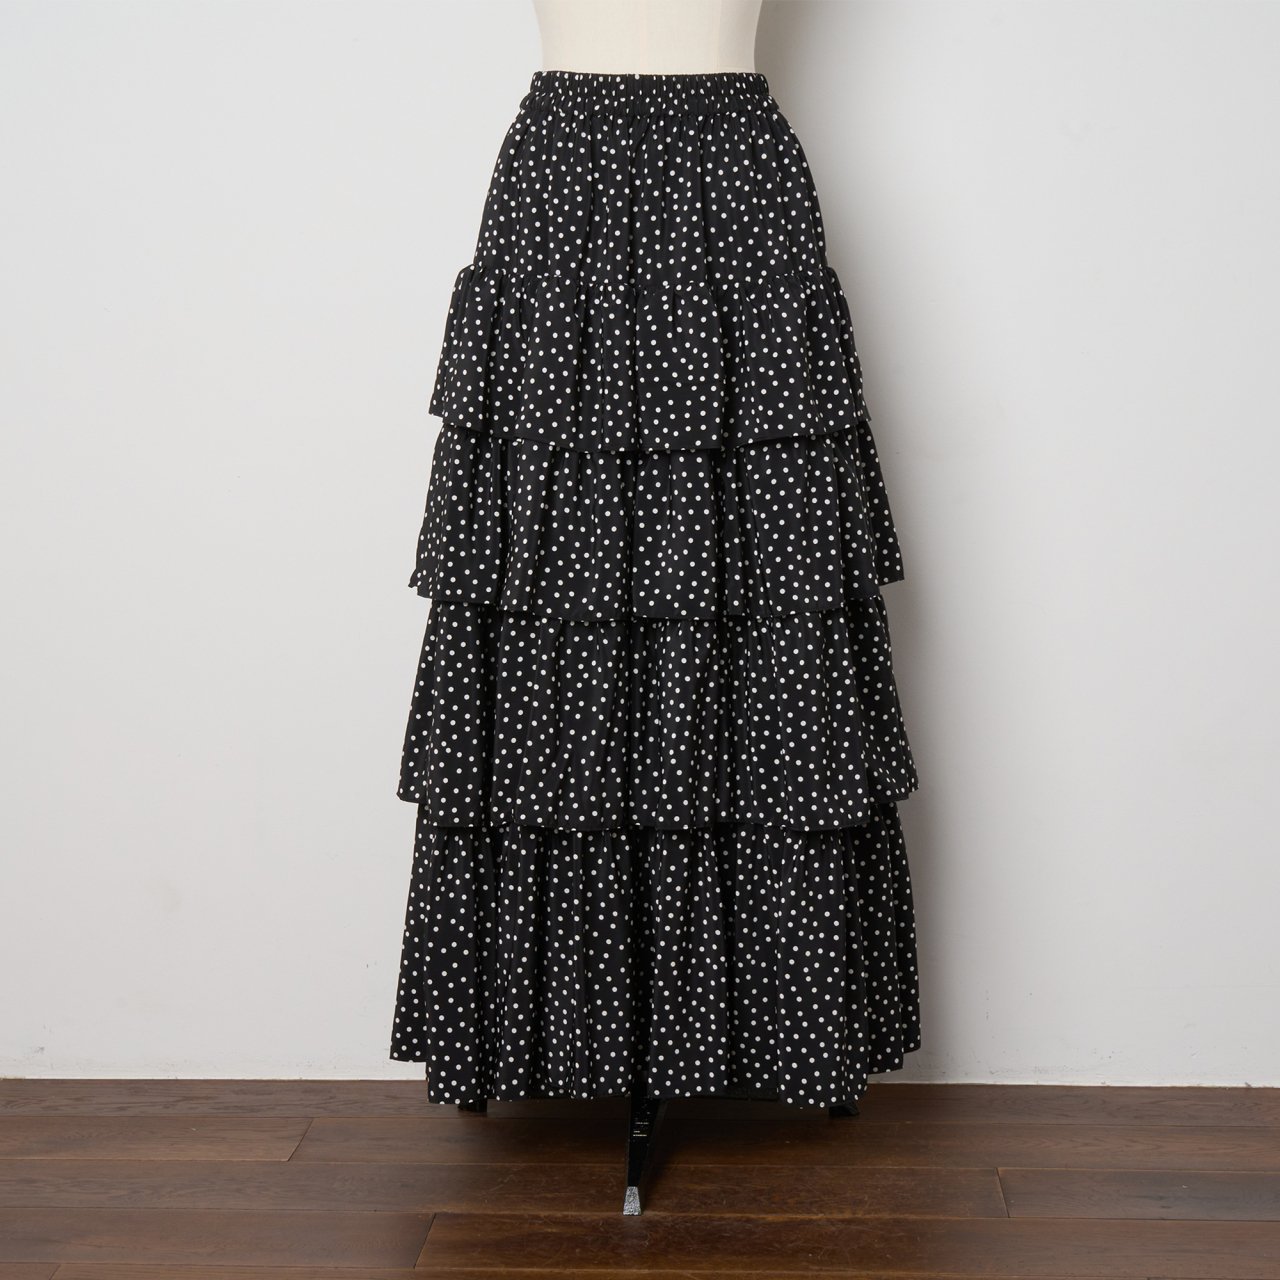 Pale Jute <BR>polka dot tiered skirt<BR>black  white